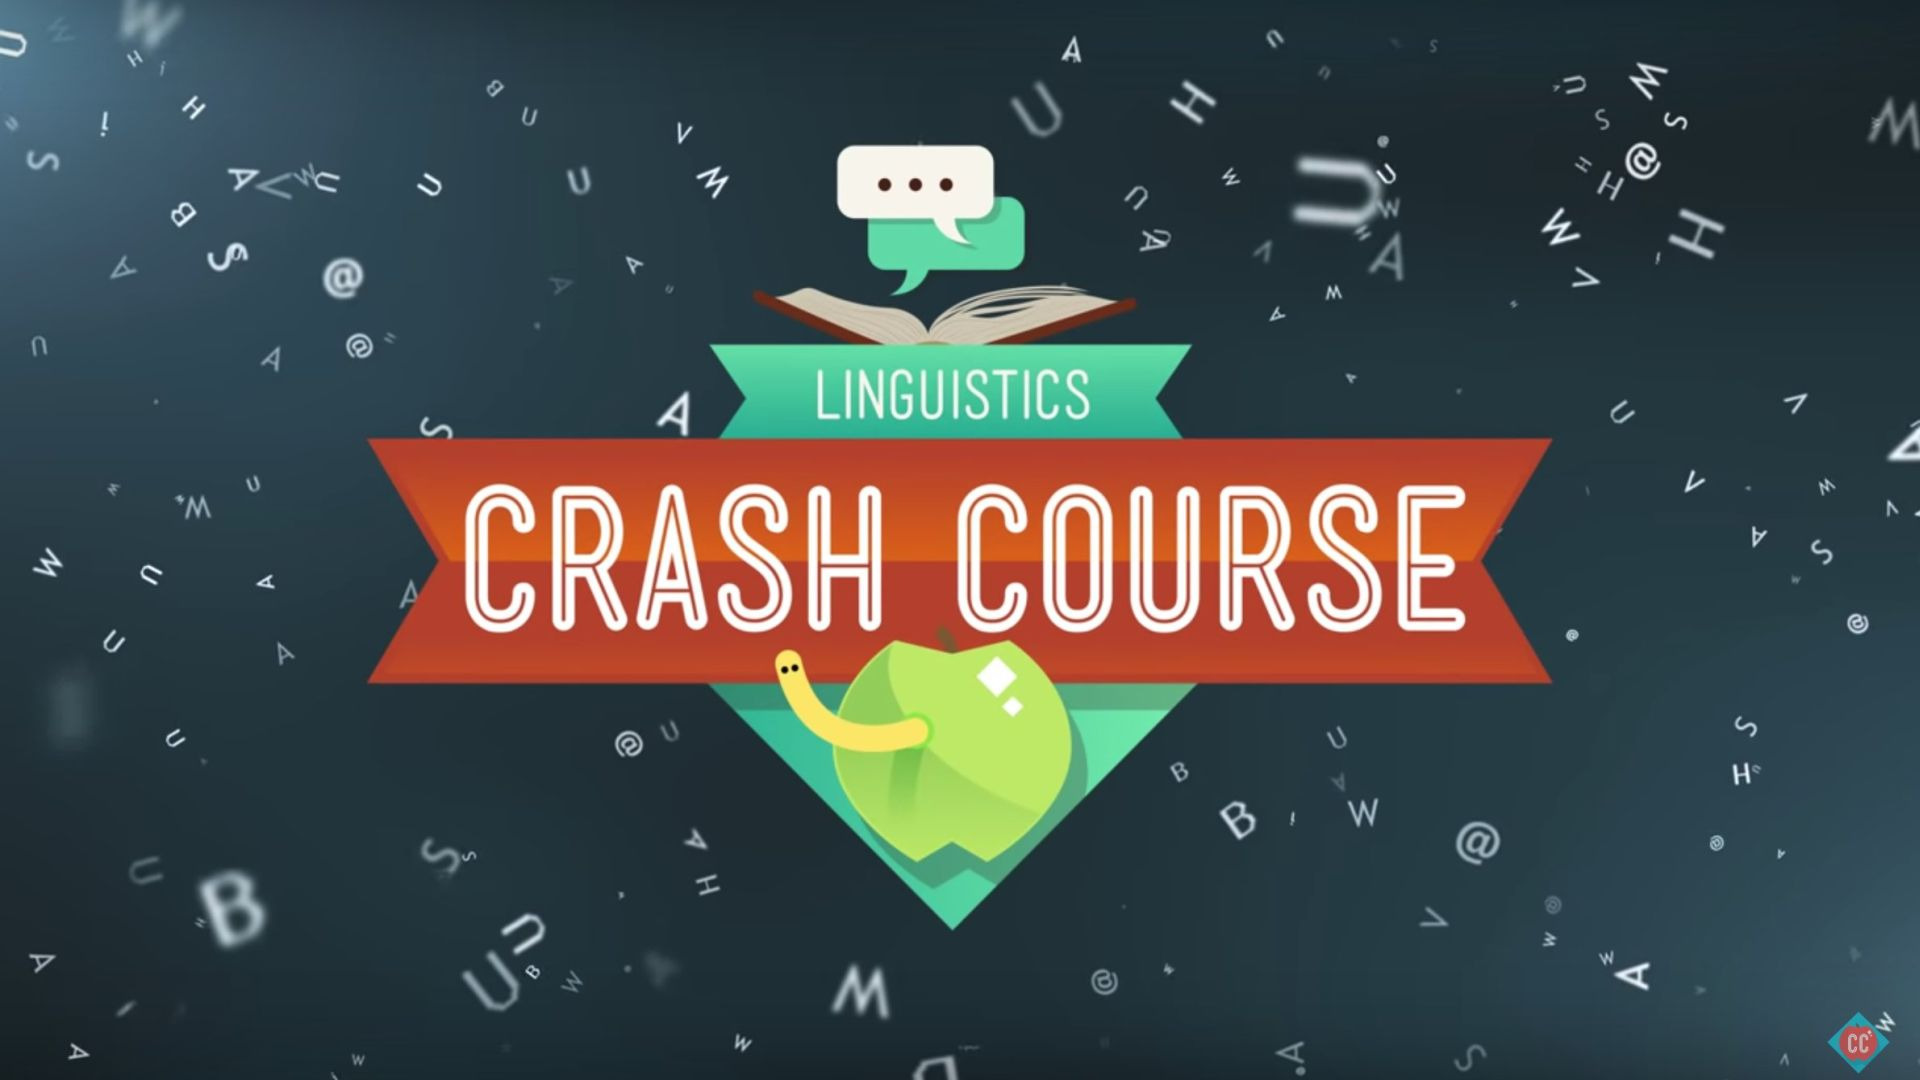 Show Crash Course Linguistics